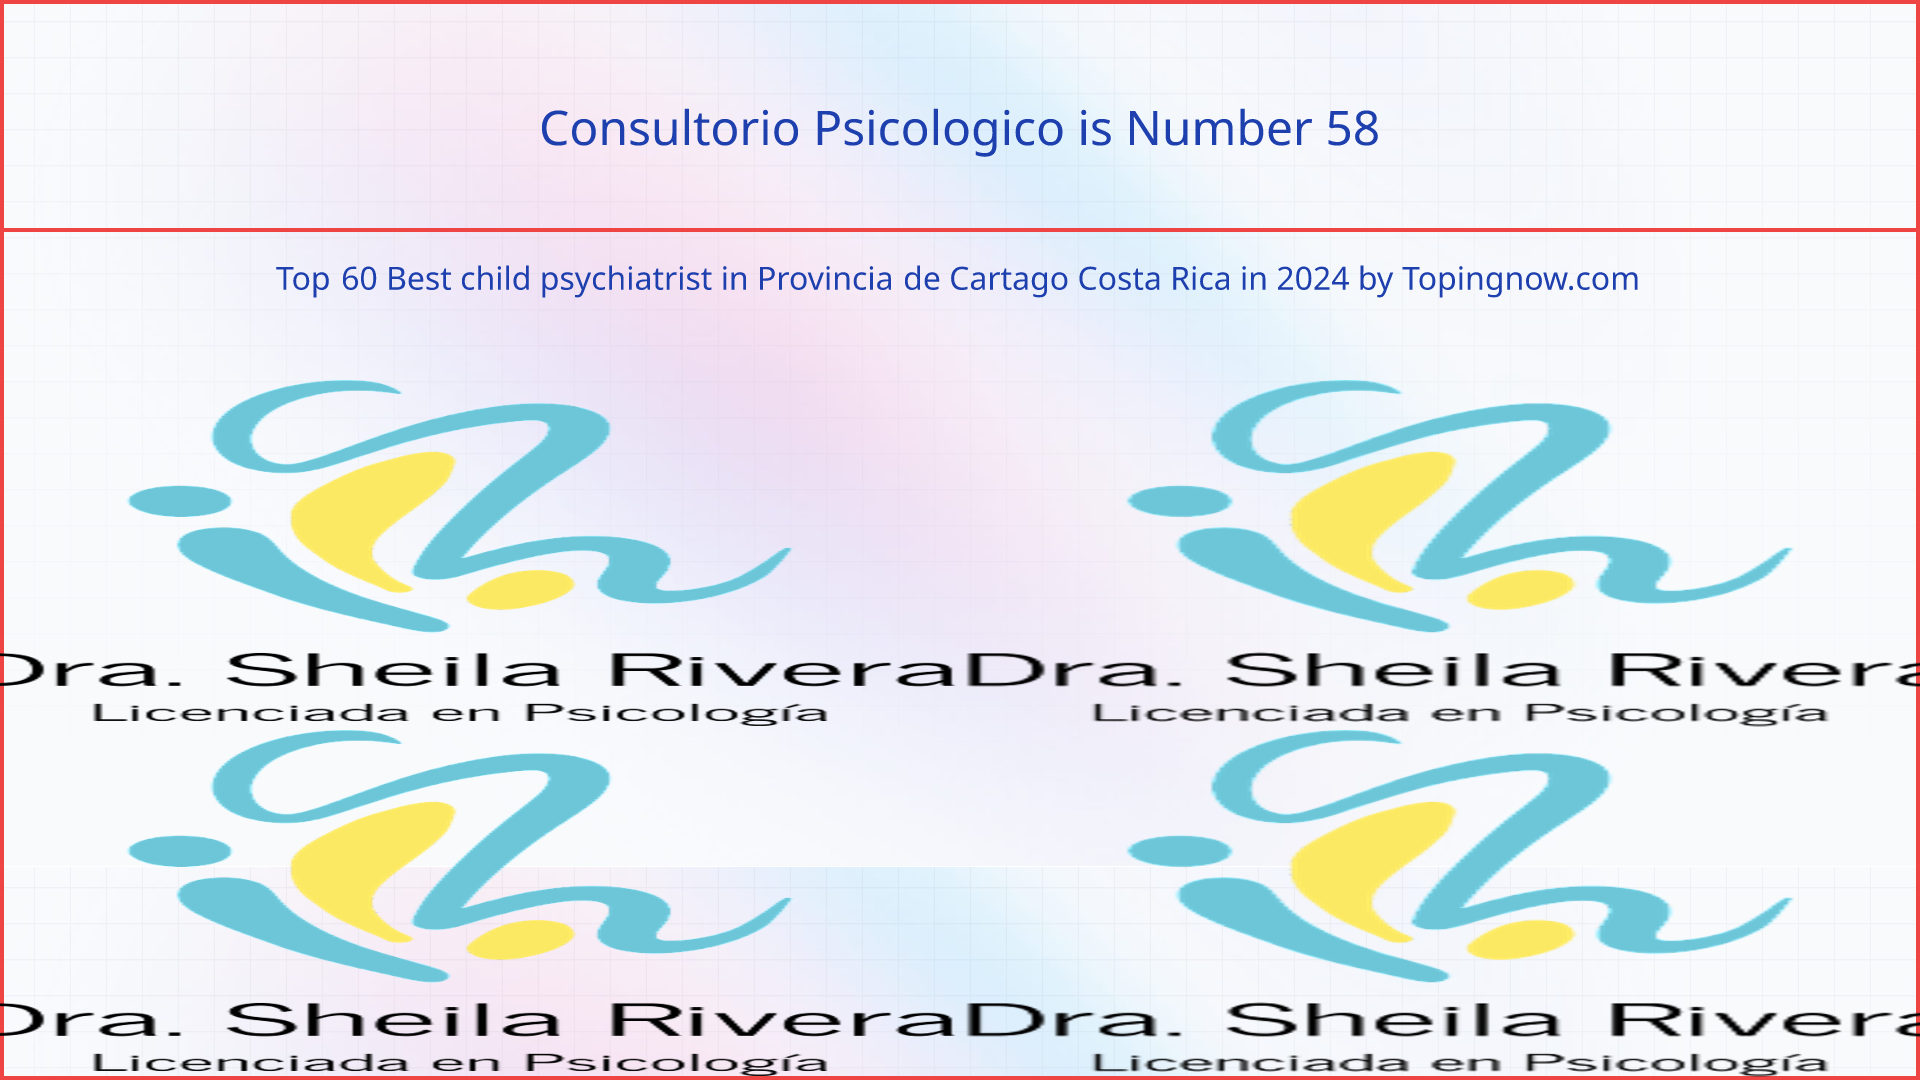 Consultorio Psicologico: Top 60 Best child psychiatrist in Provincia de Cartago Costa Rica in 2024